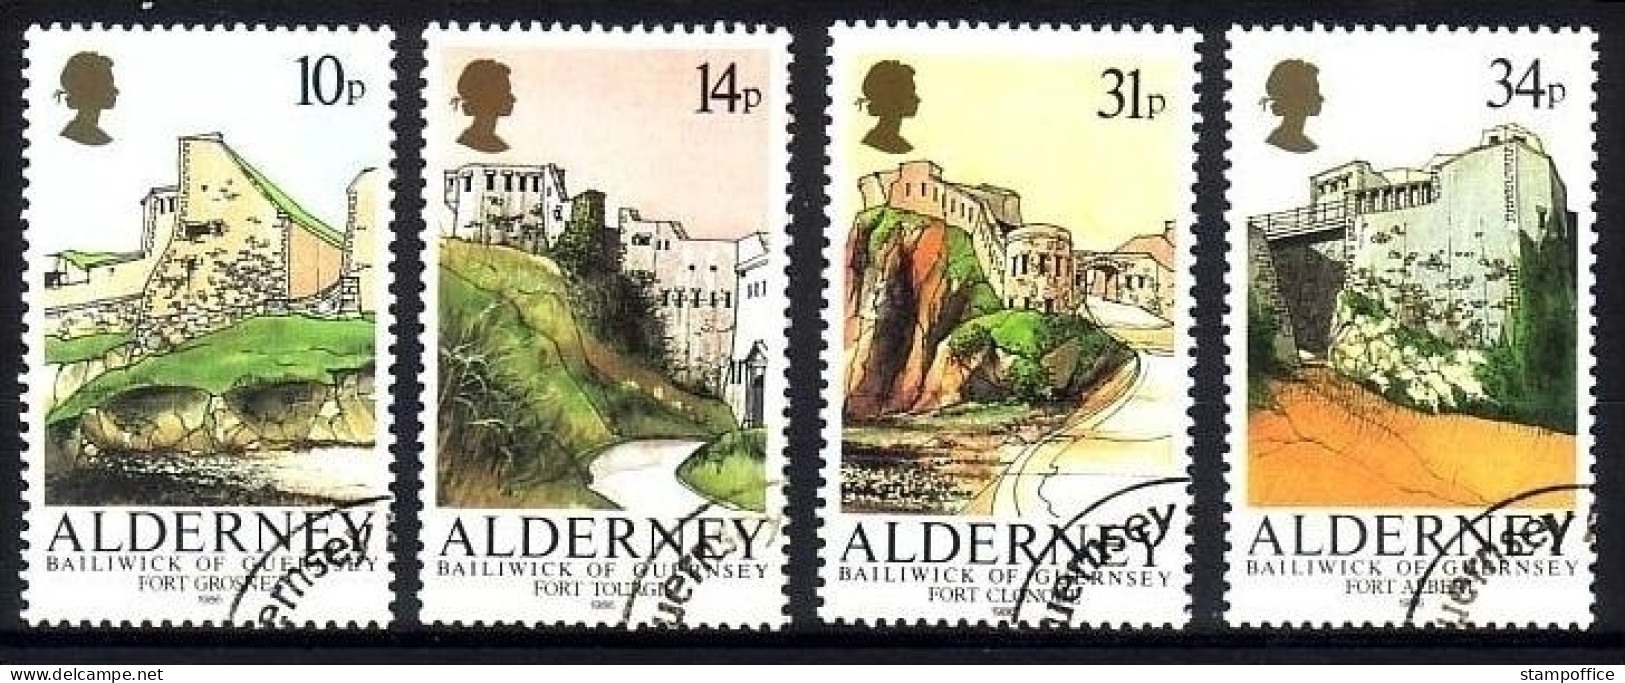 ALDERNEY MI-NR. 28-31 O FESTUNGEN 1986 - Alderney